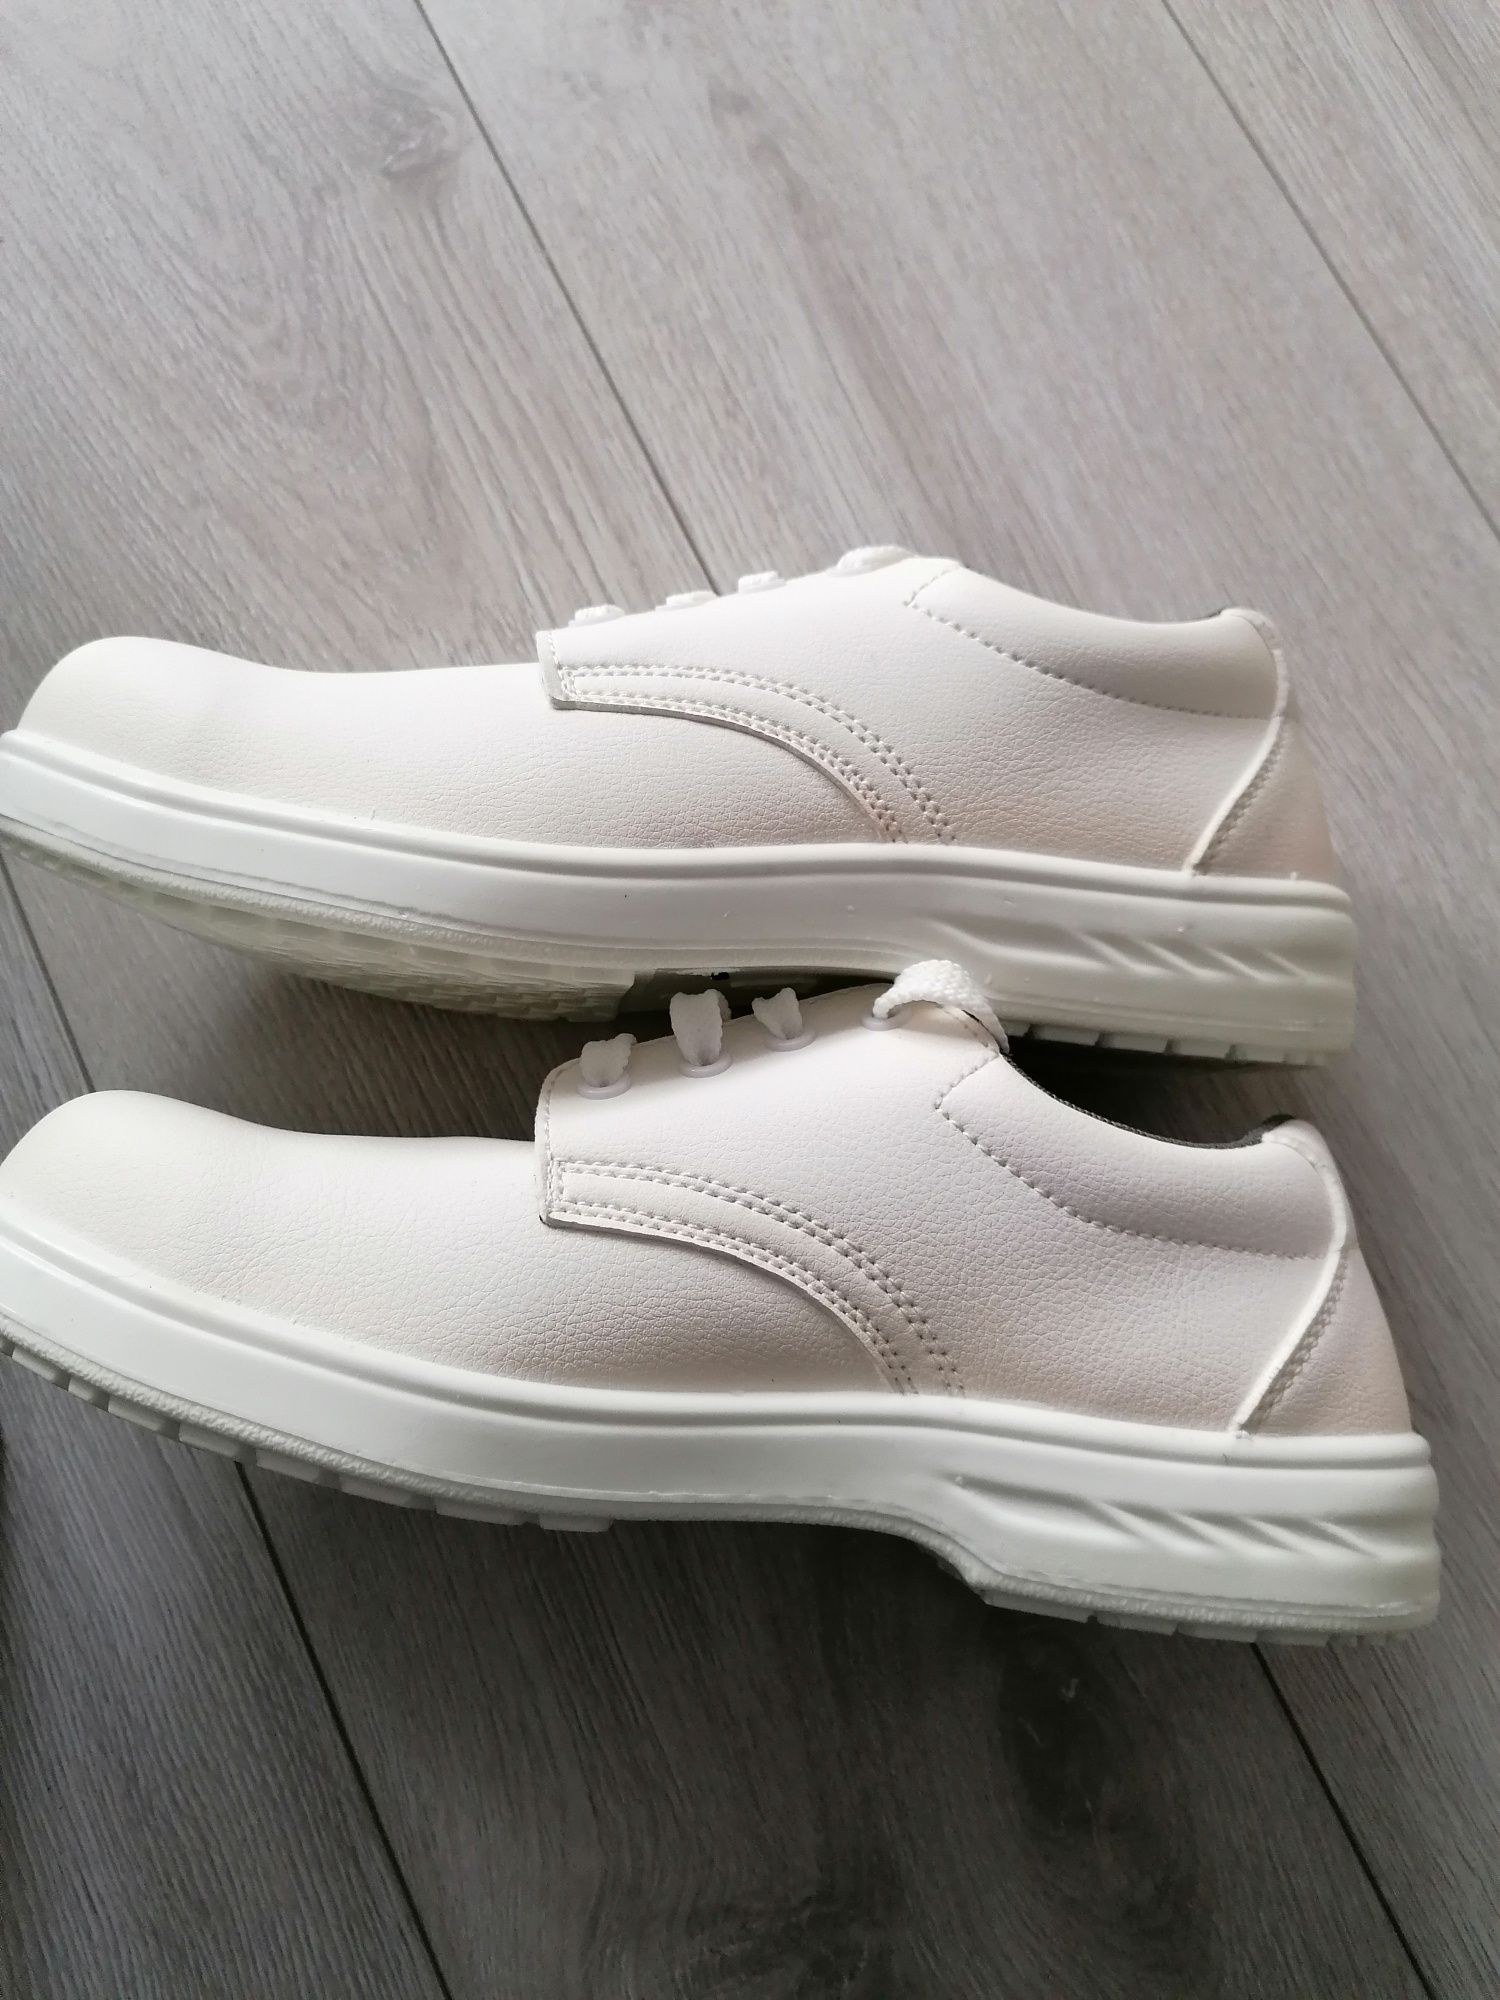 Buty robocze białe antypoślizgowe Steelite rozmiar 43